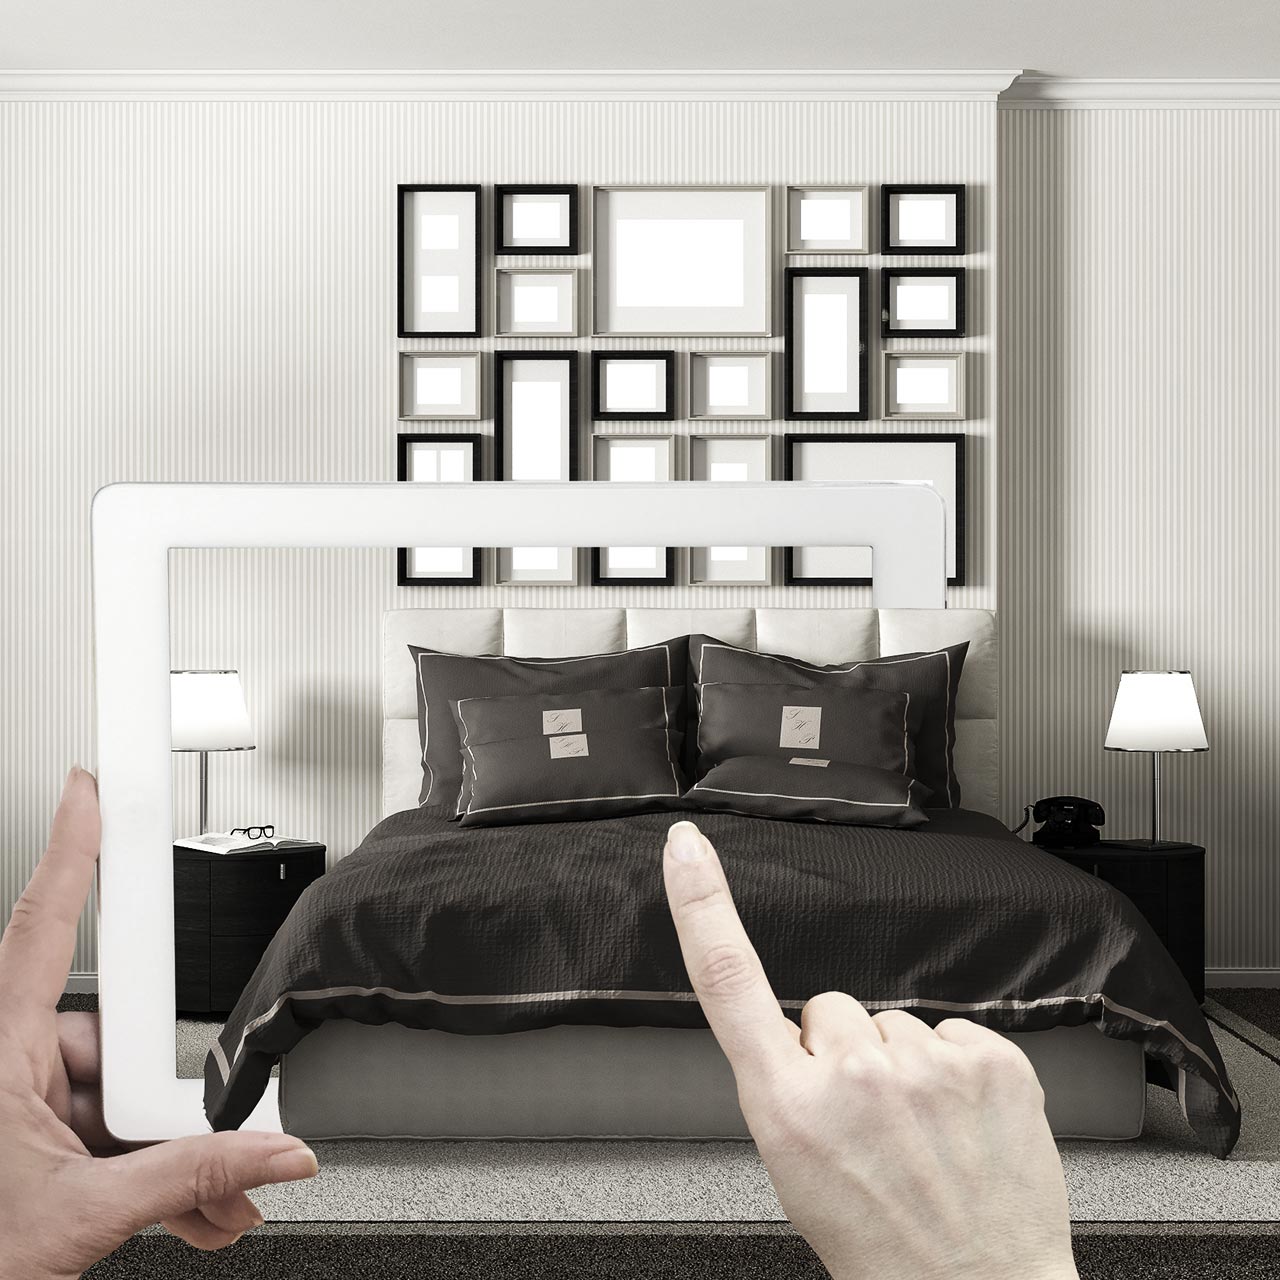 Visiualisierung der Digitalisierung von Hotelzimmer und Tablet